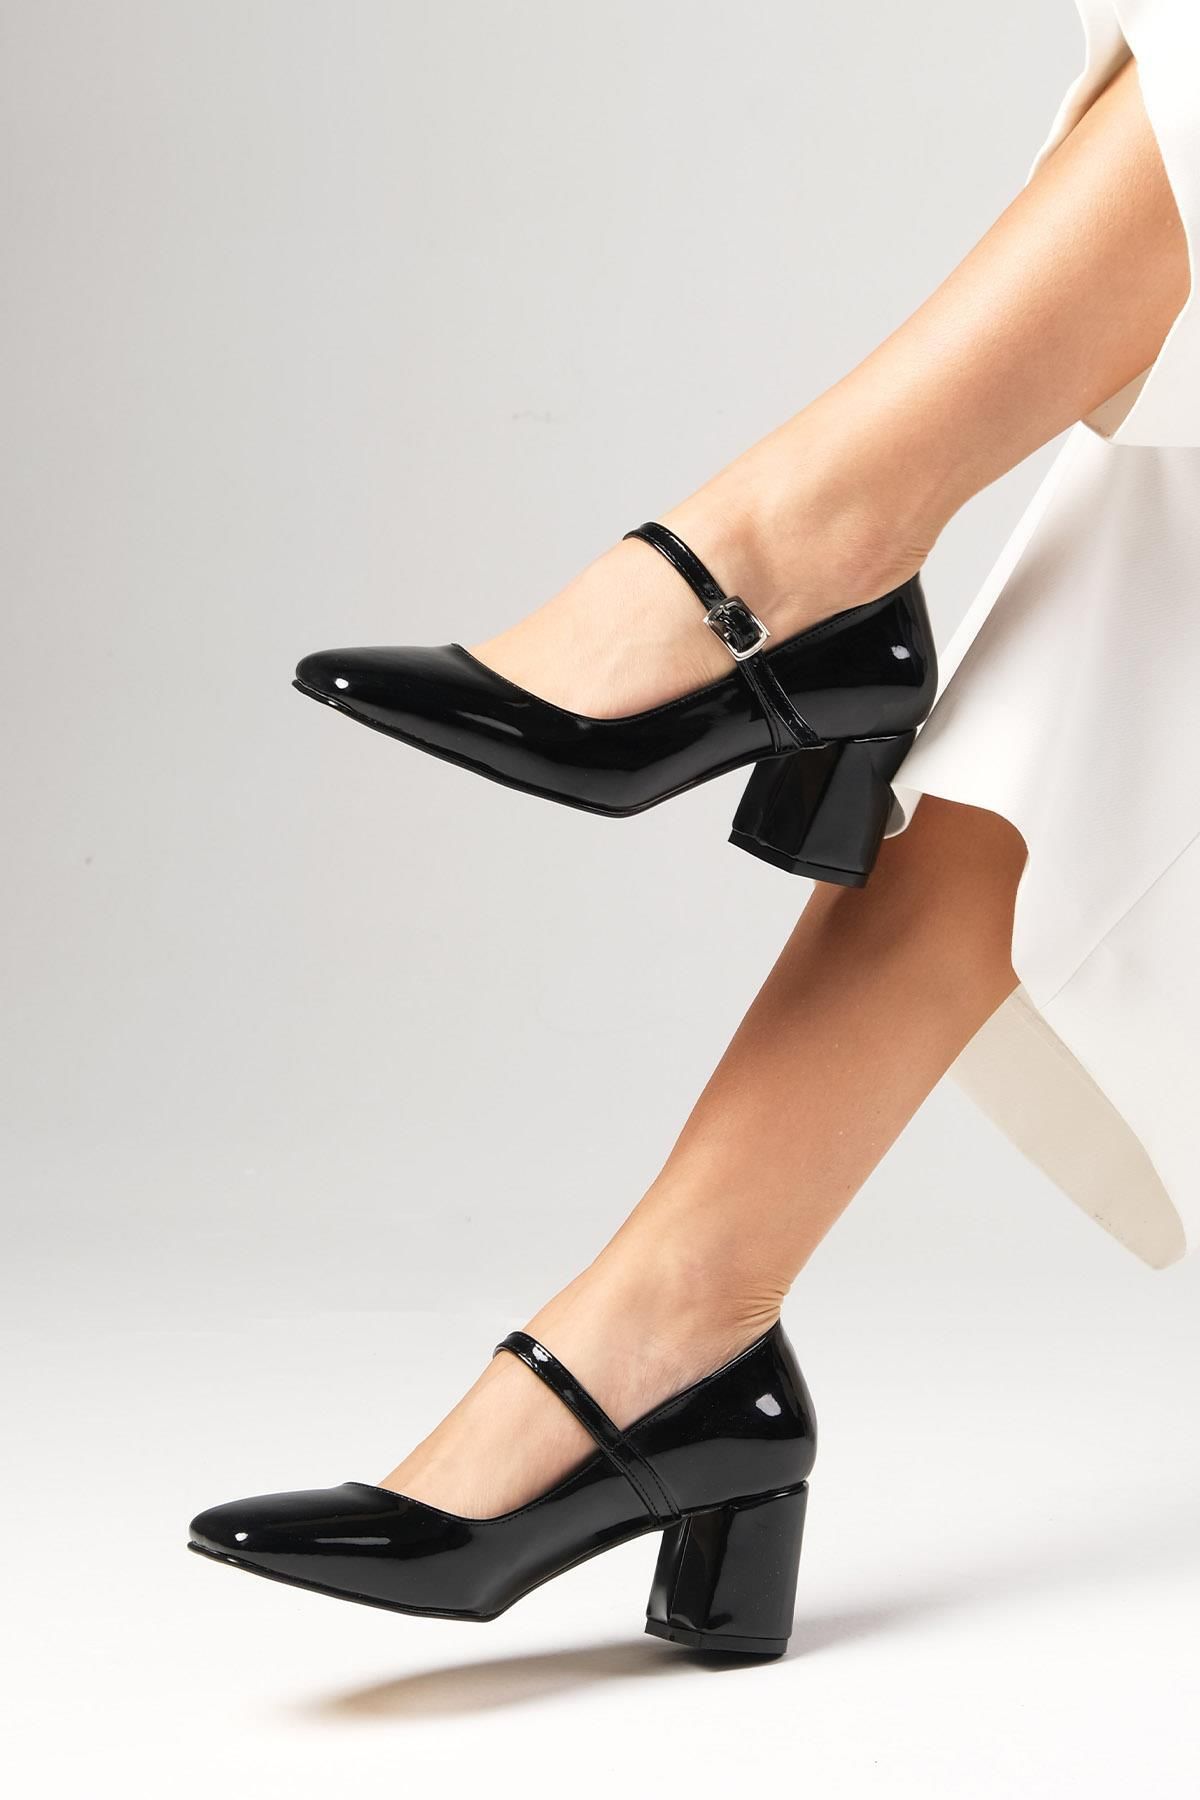 Mio Gusto Alda Siyah Renk Rugan Küt Burunlu Kadın Topuklu Ayakkabı